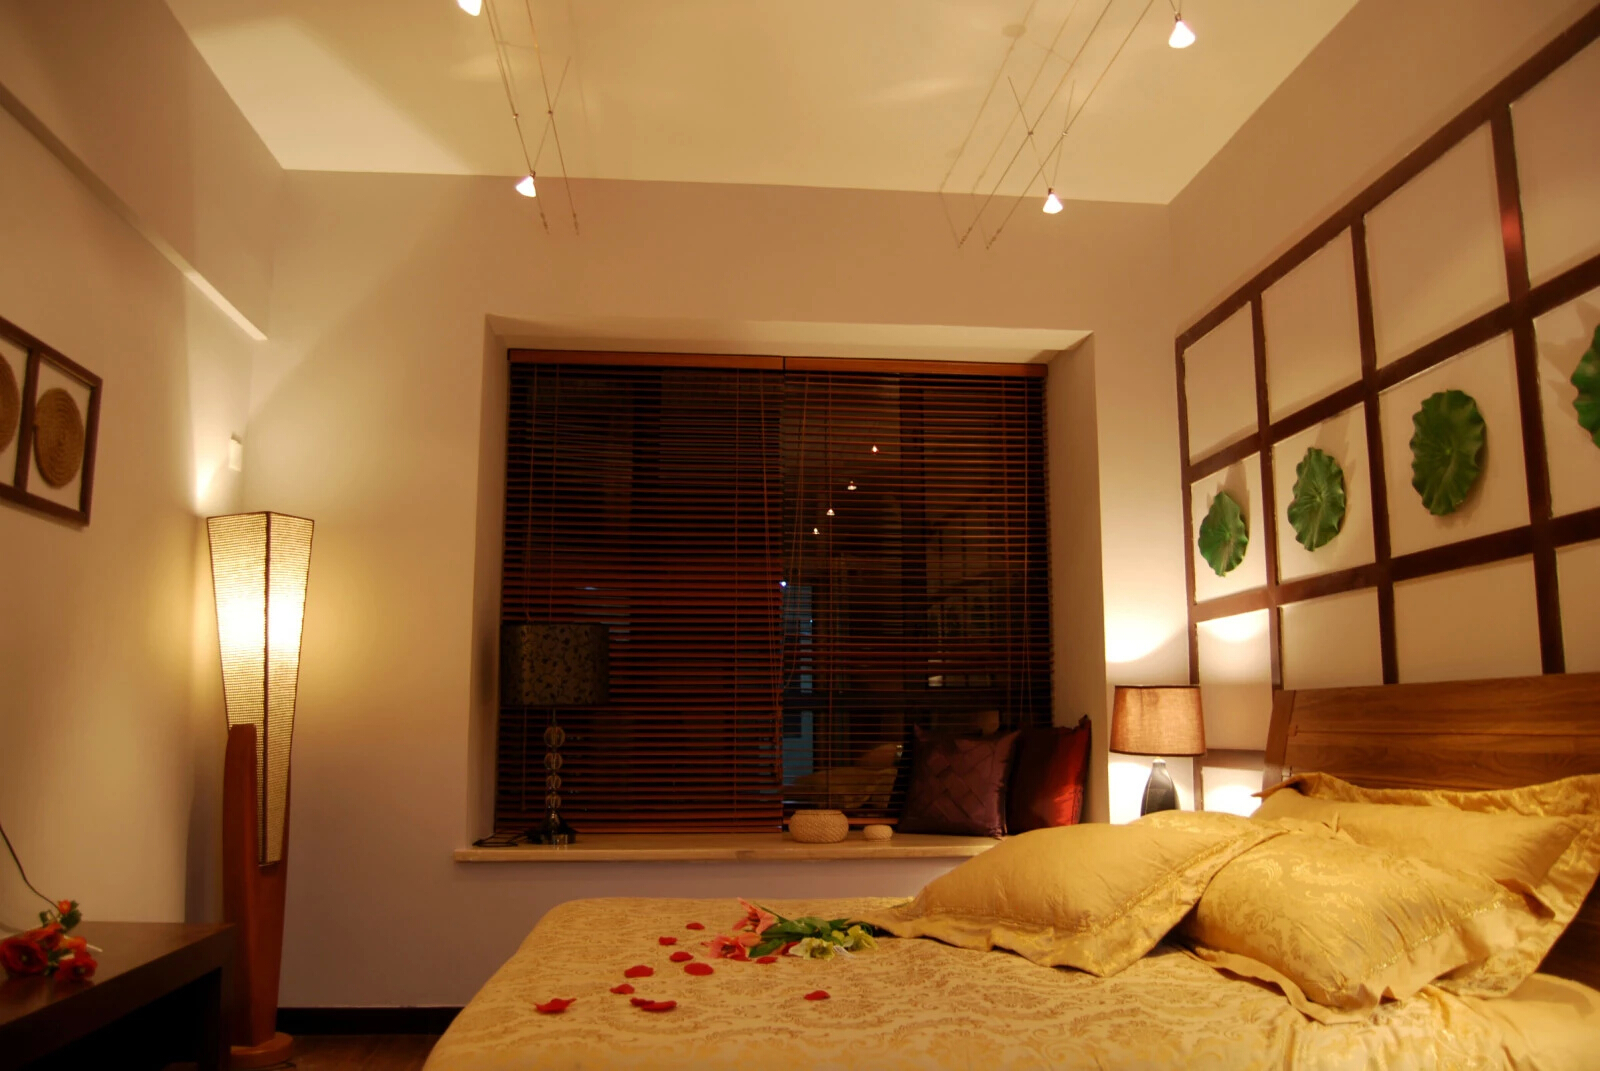 三居 旧房改造 欧式 新中式 卧室图片来自赵修杰在立方小区的分享